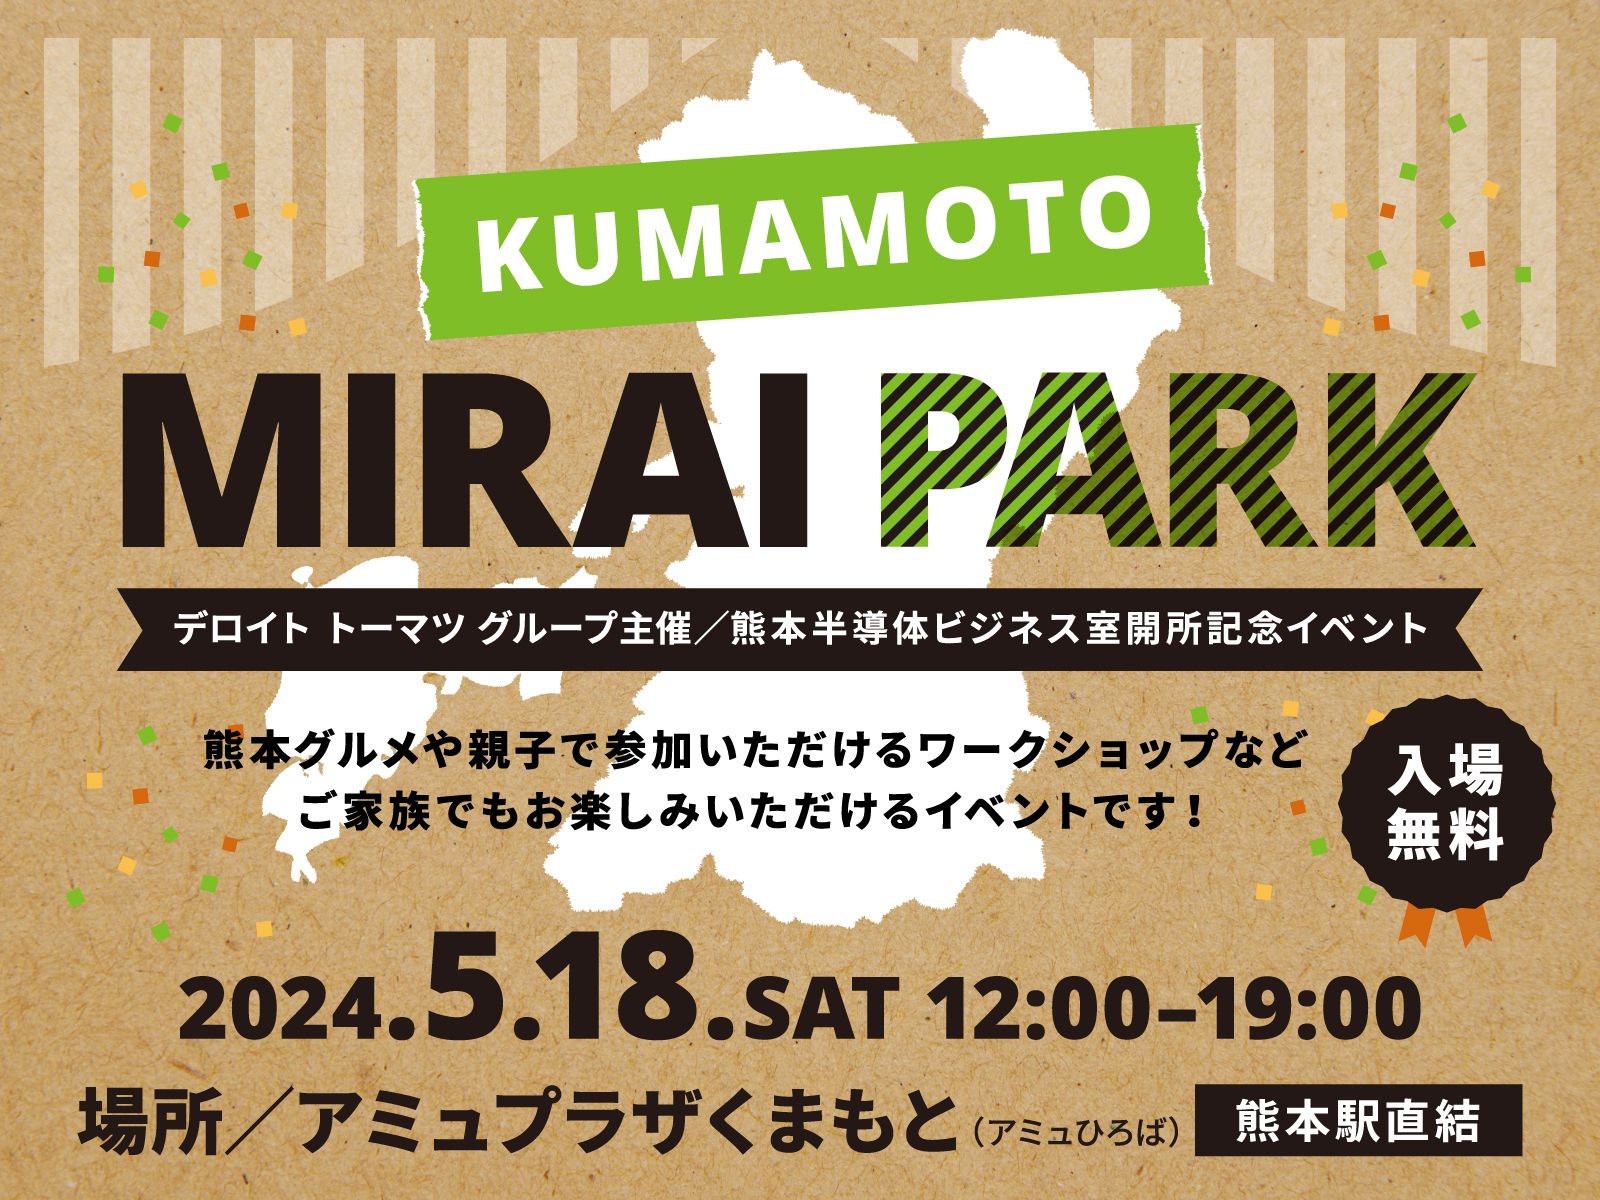 デロイト トーマツ グループ主催「KUMAMOTO MIRAI PARK」開催！